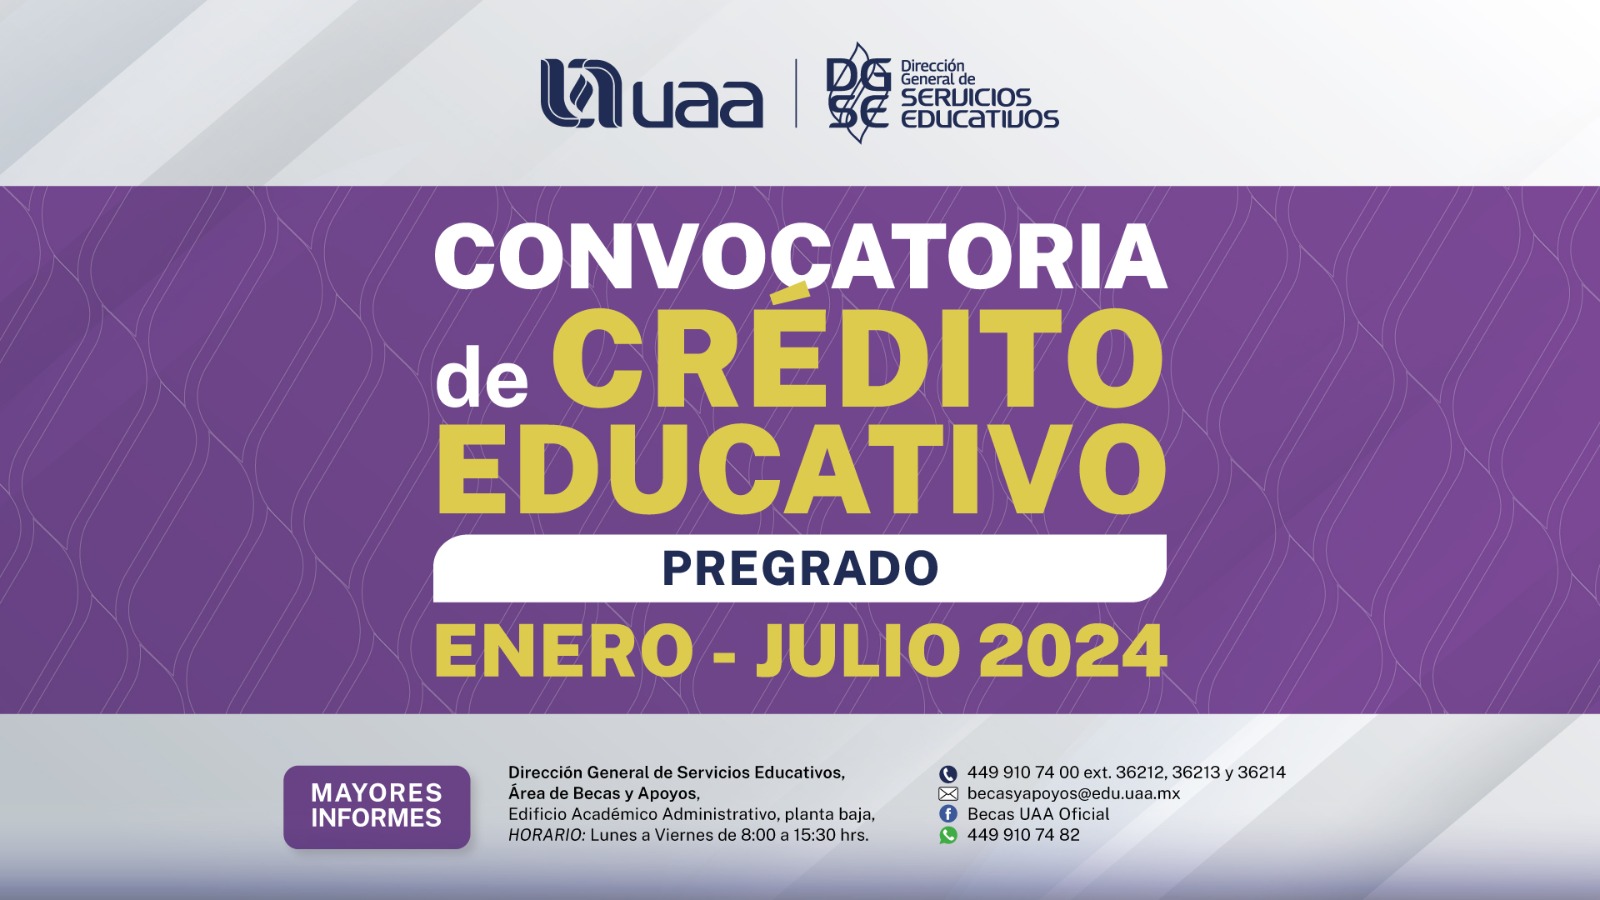 Convocatoria de Crédito Educativo pregrado enero-julio 2024